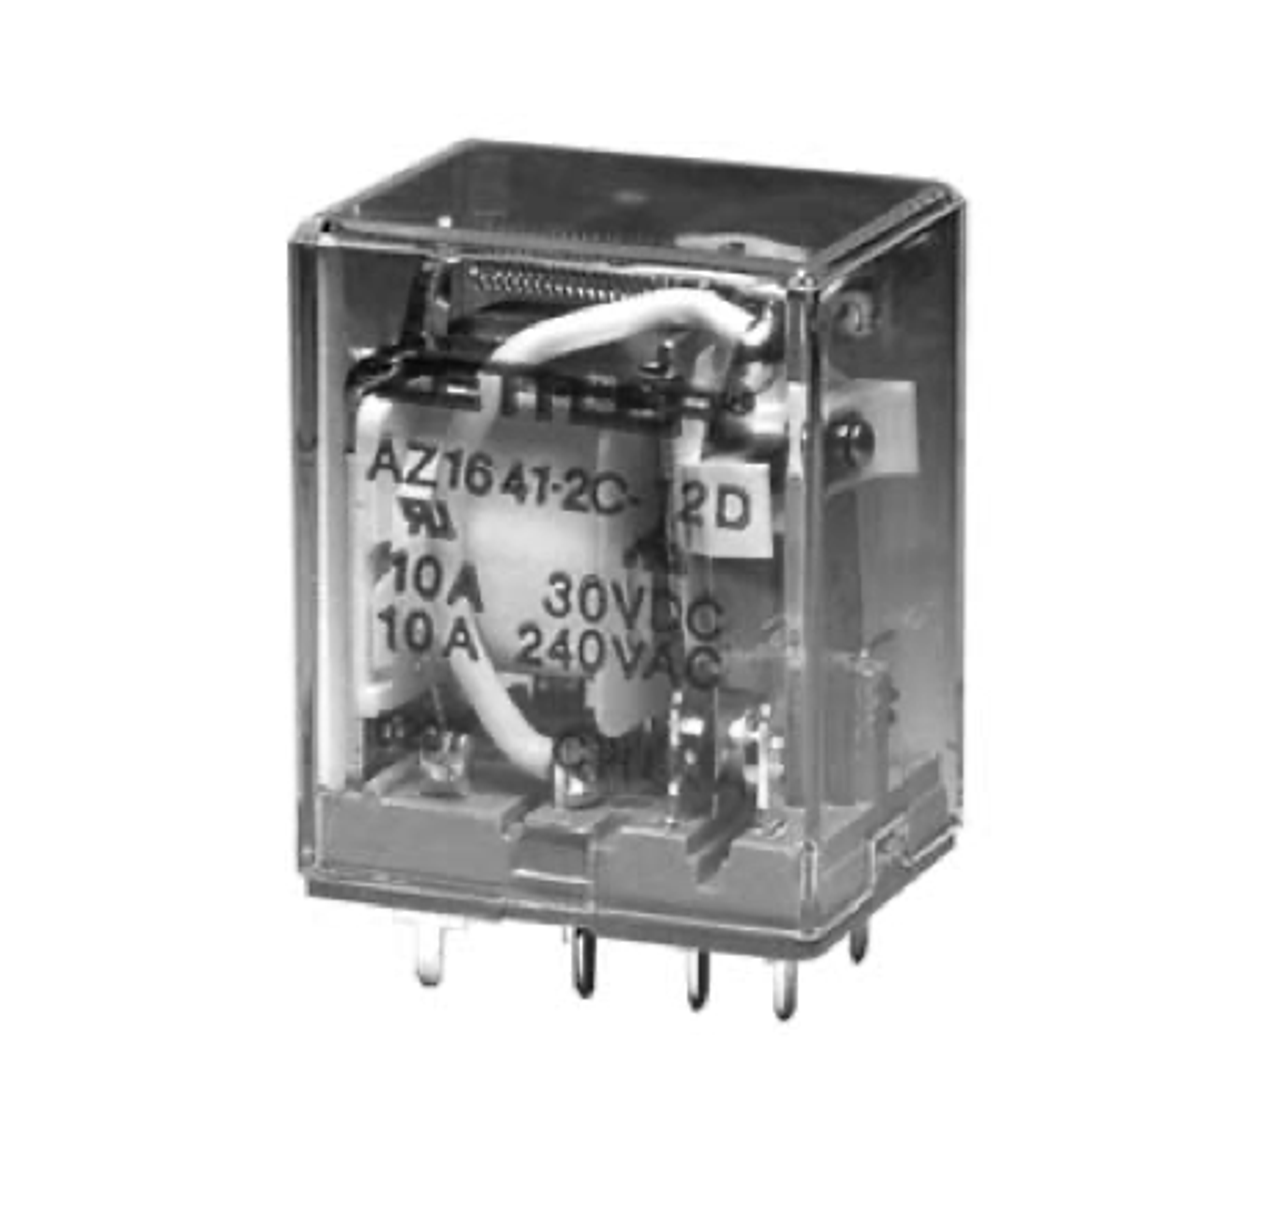 American Zettler AZ1641-1CT-220A Power Relay